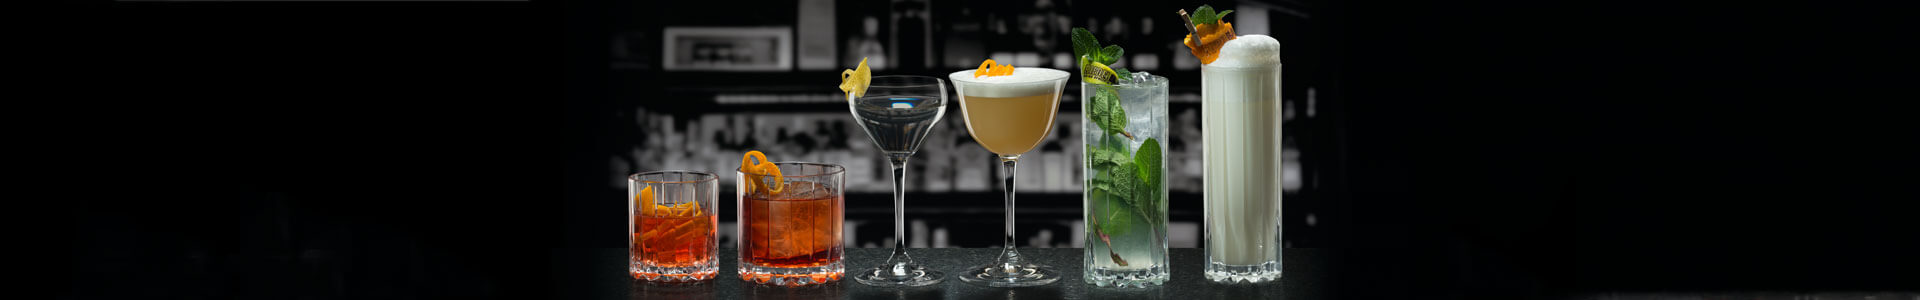 Verschiedene Bargläser aus der Serie Riedel Bar stehen gefüllt mit Cocktails nebeneinander.